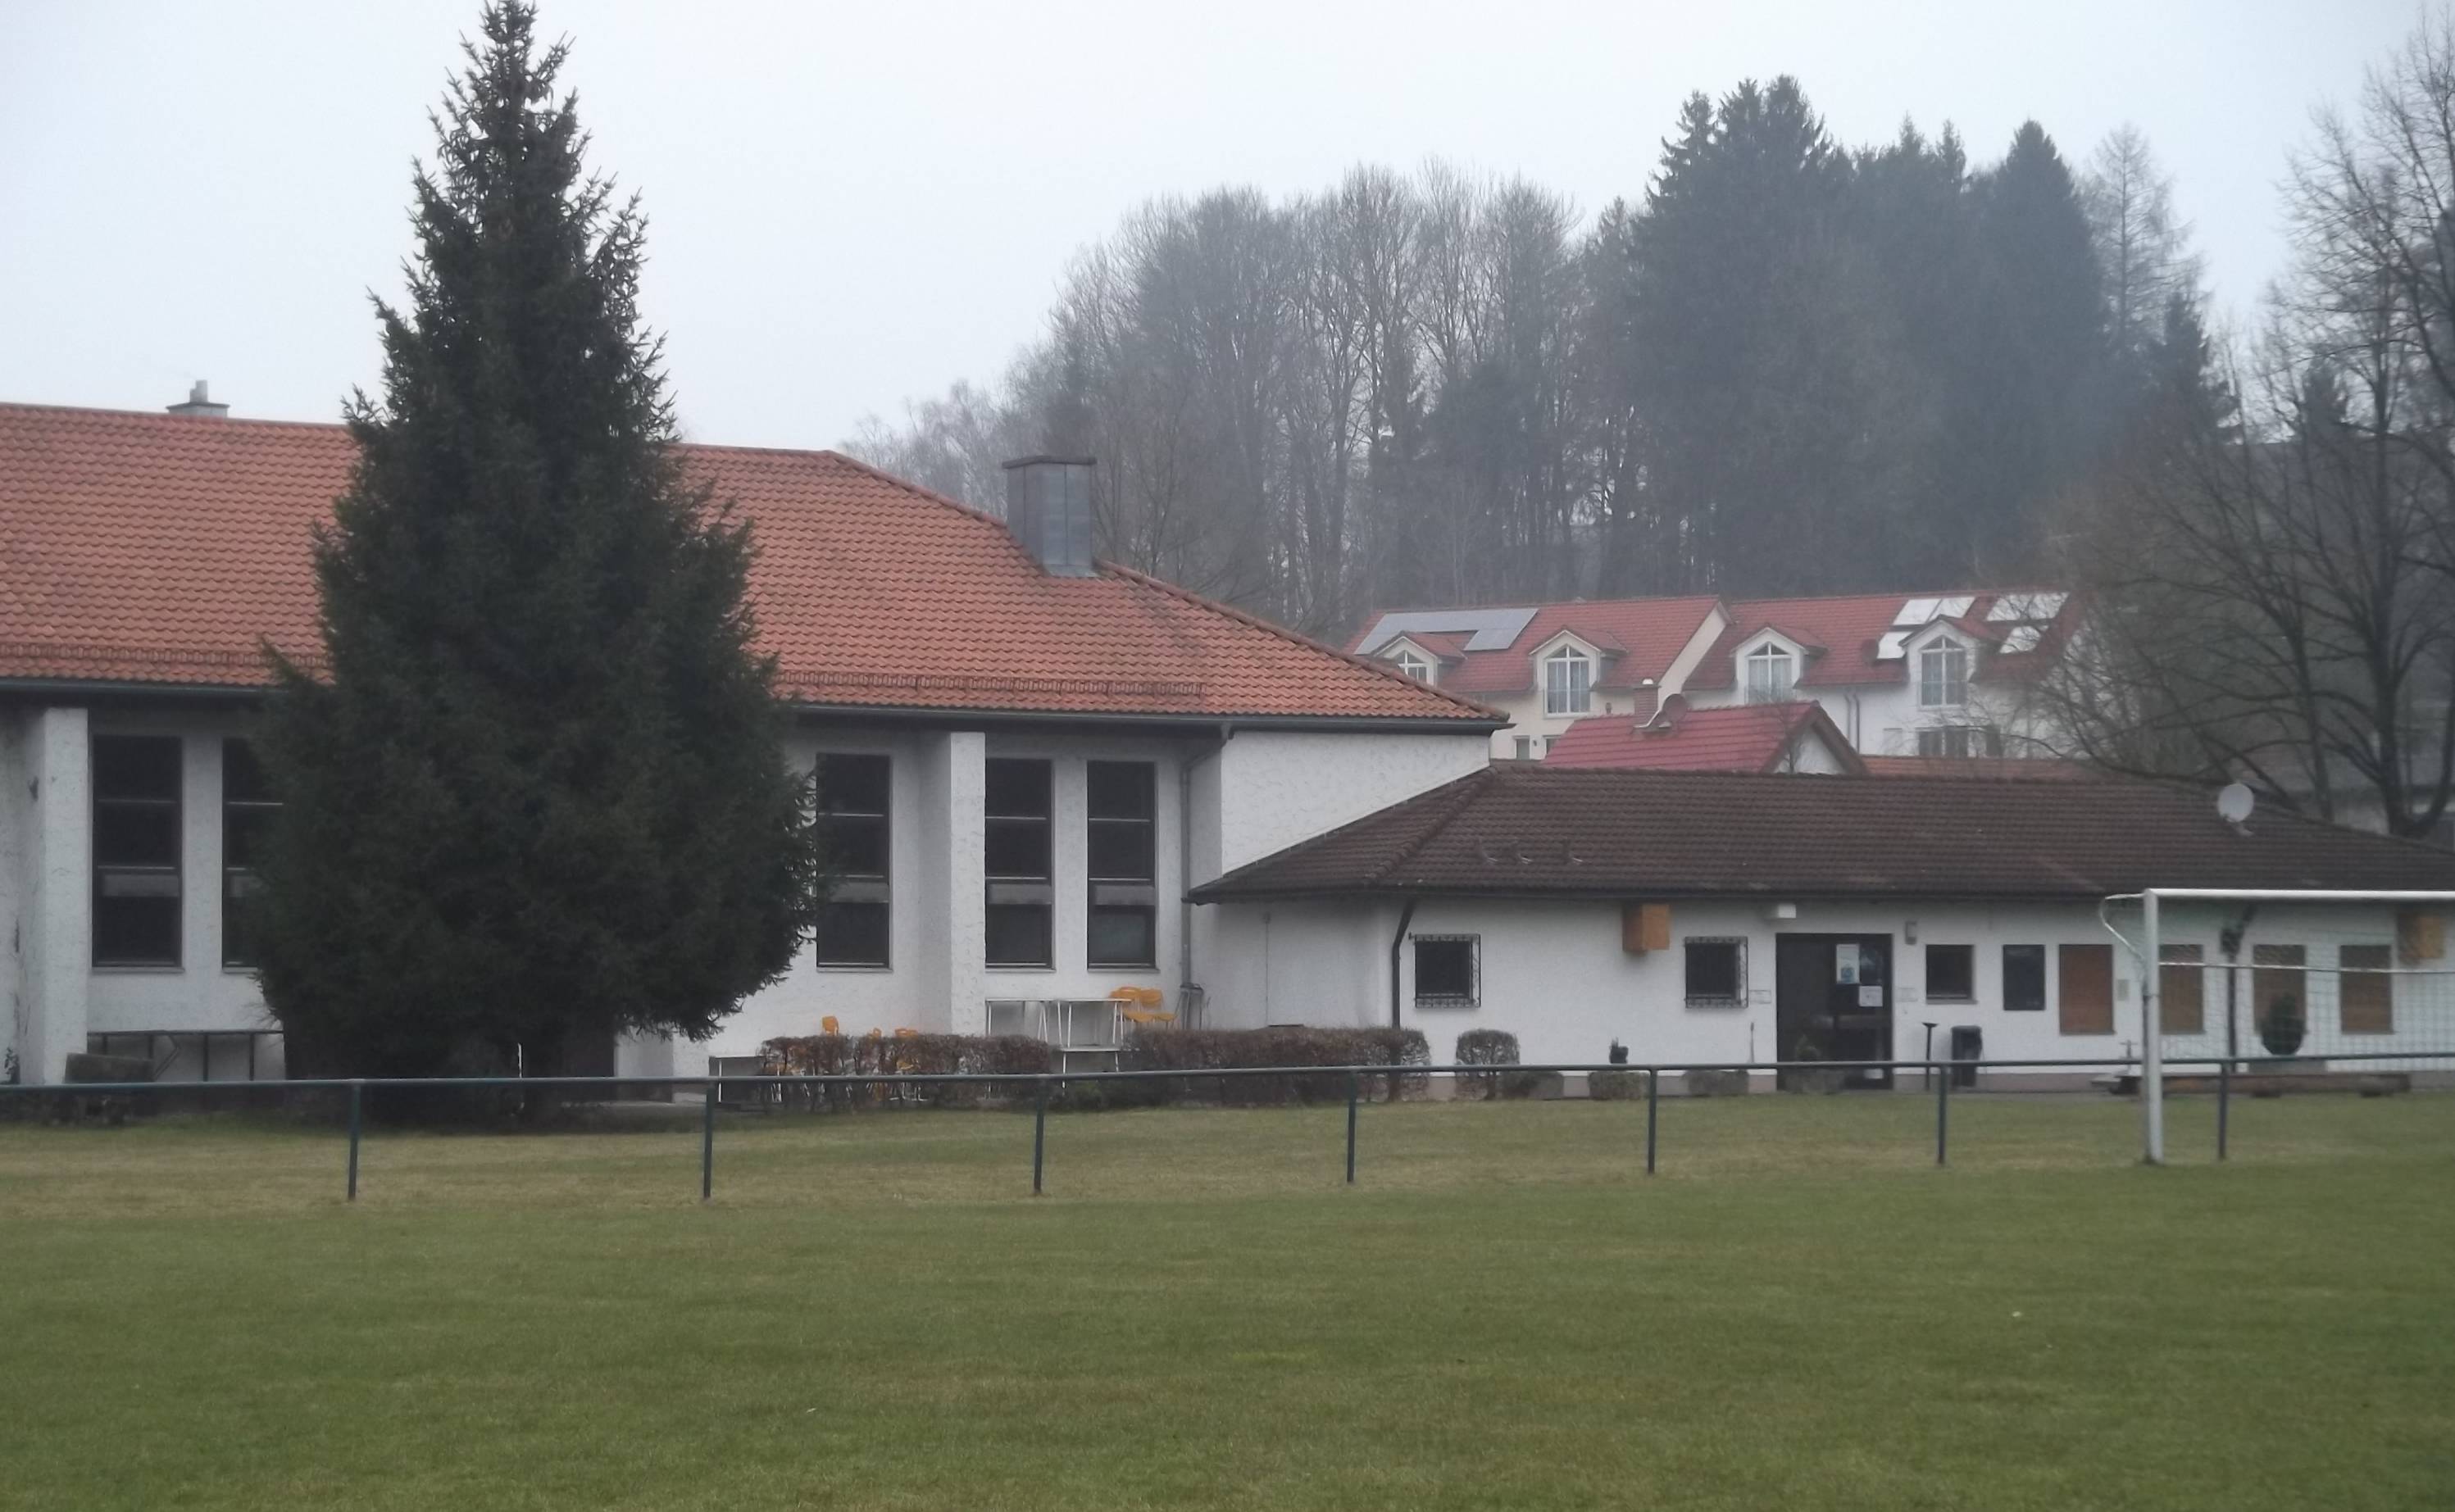 ATSV-Halle mit Umkleide- und Duschkabinen-Bau, 2015